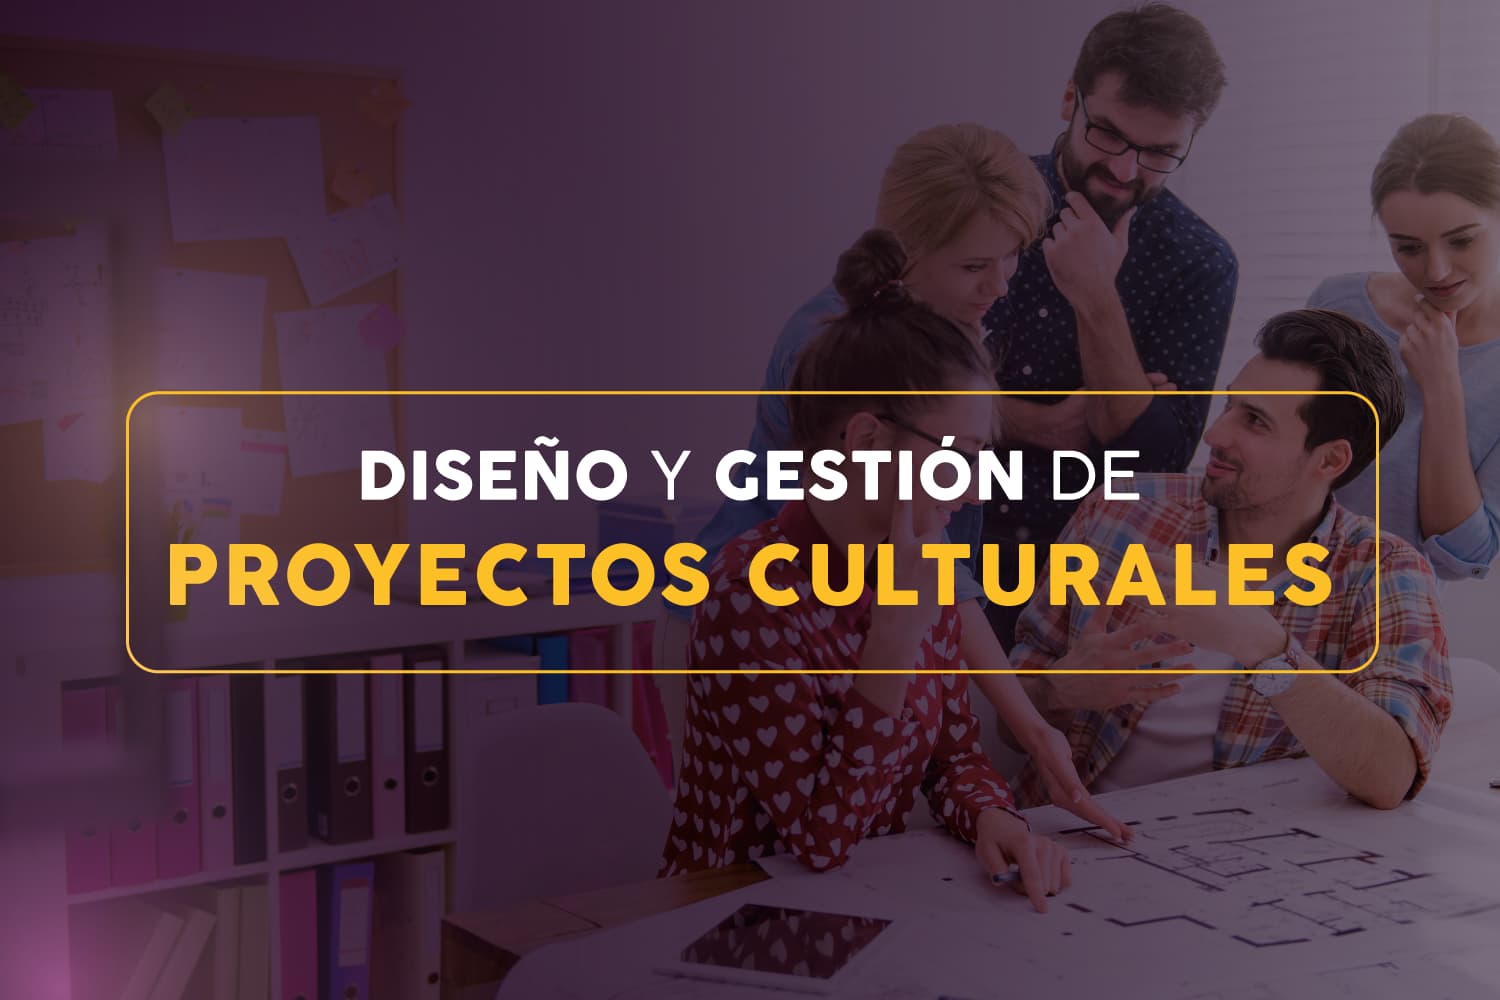 Diseño y gestión de proyectos culturales